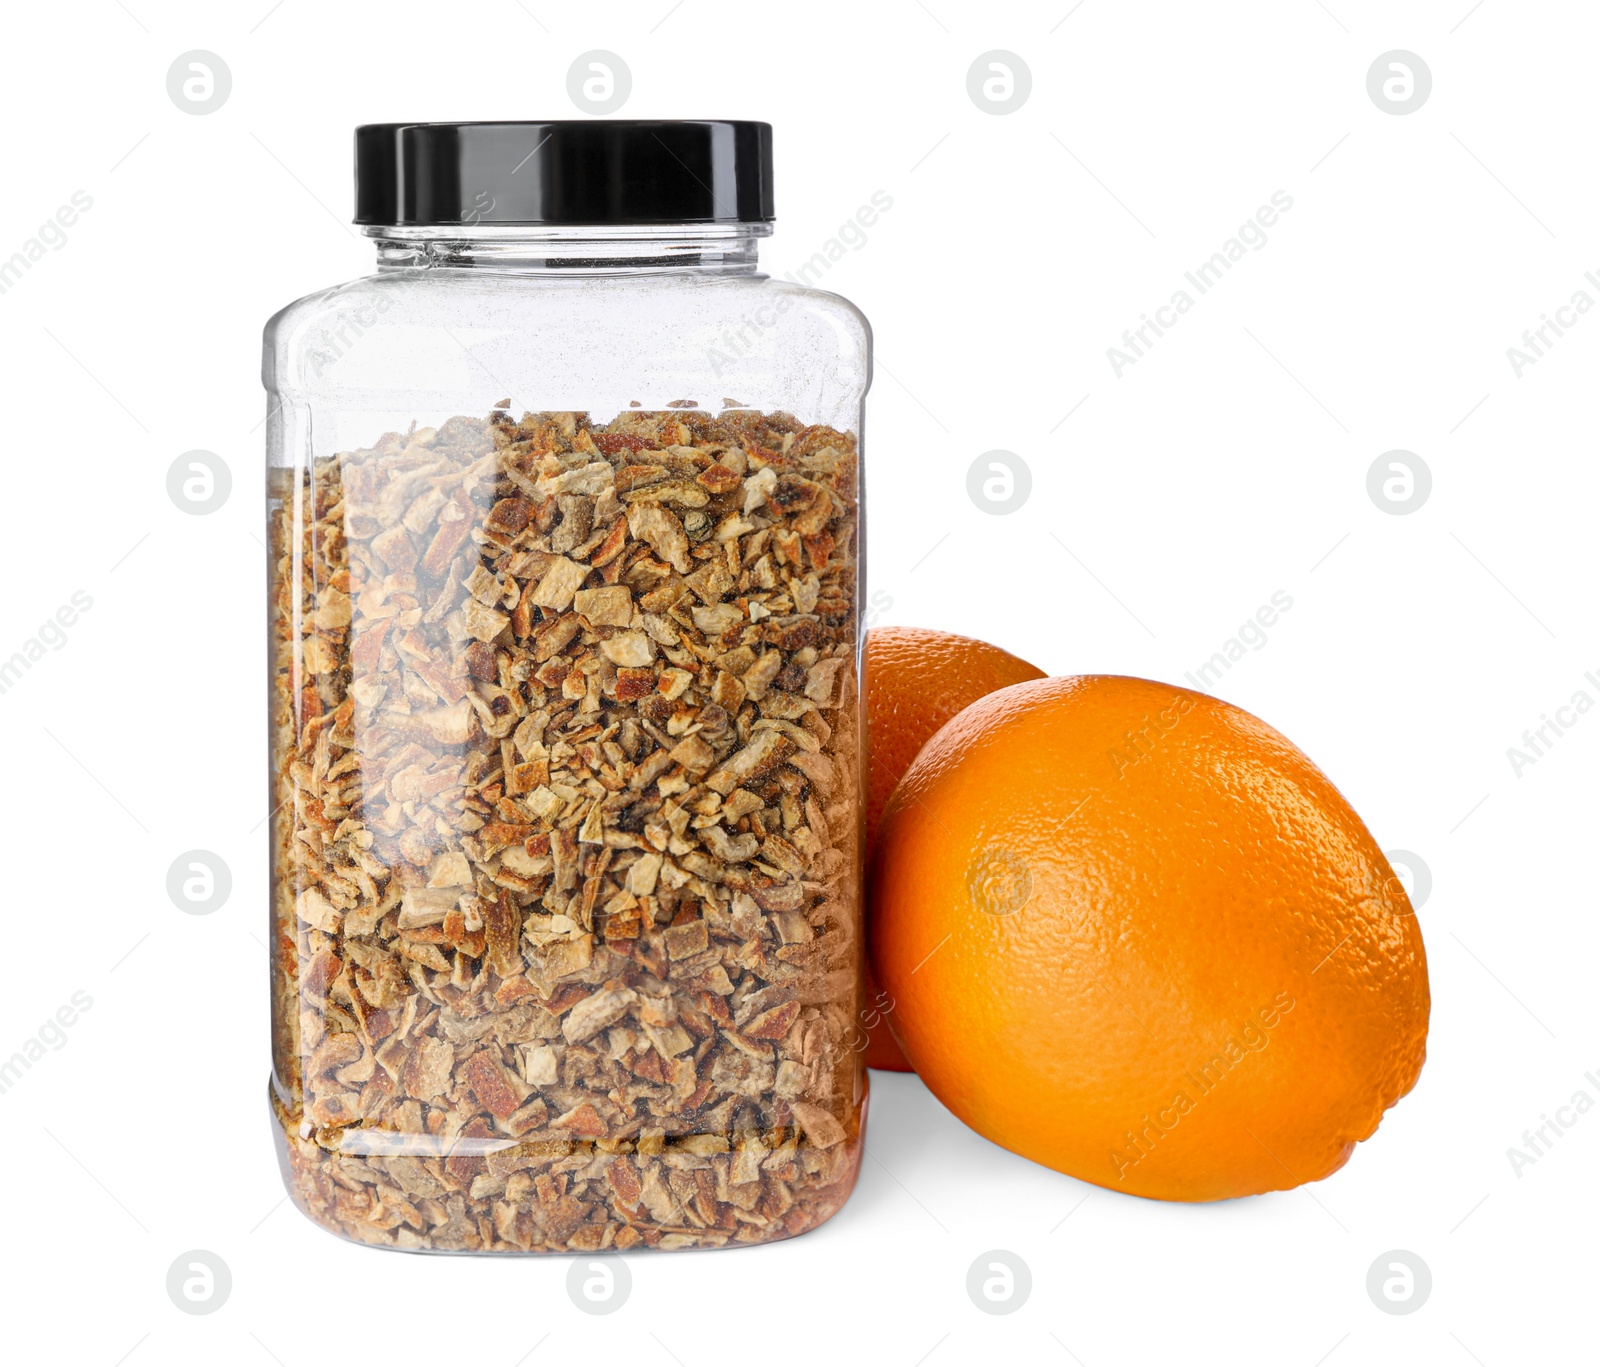 Photo of Jar of dried orange zest seasoning and fresh fruits isolated on white